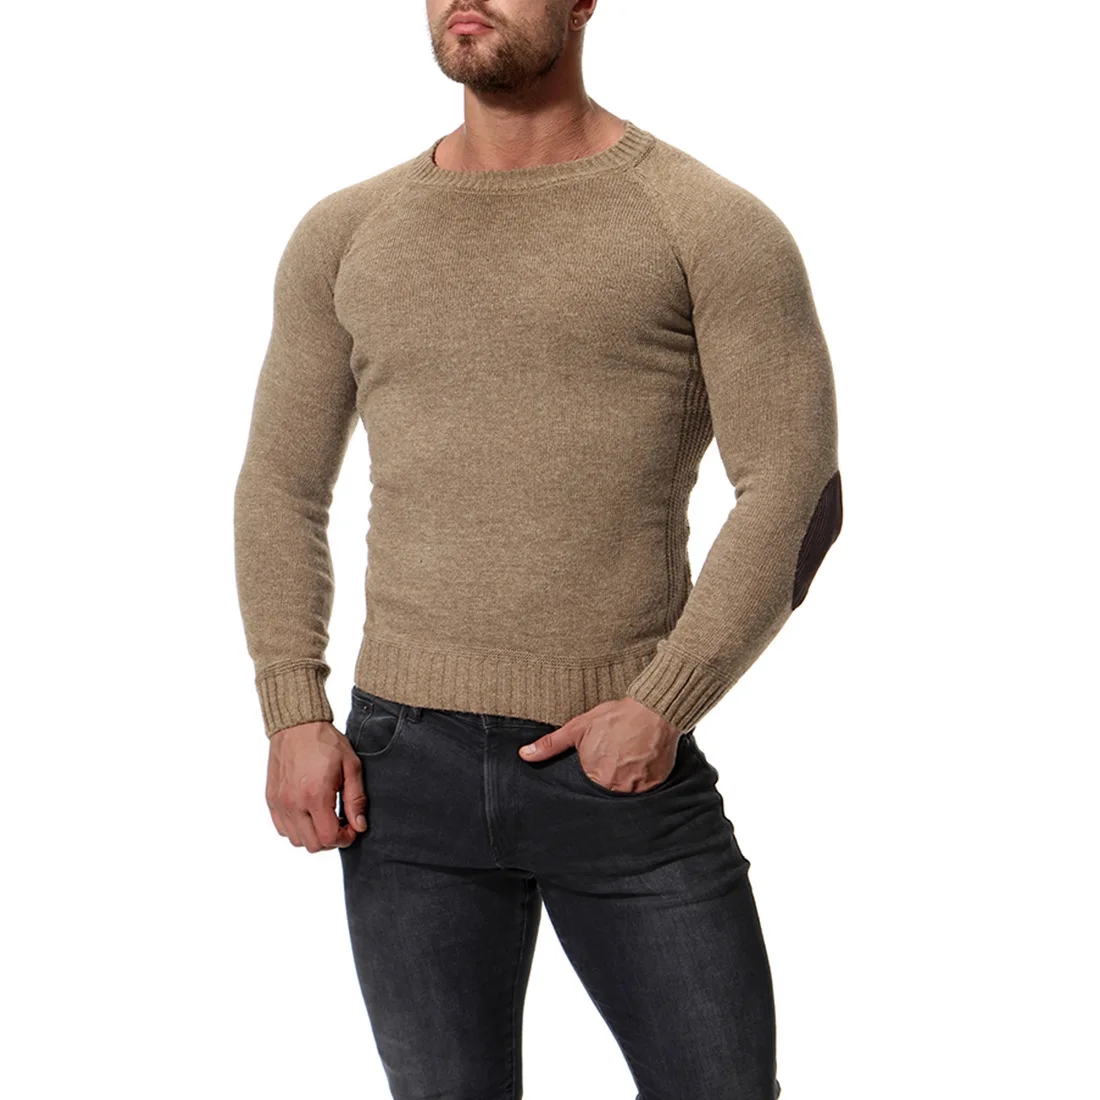 2018 Sweaters Men New Fashion Casual O Neck Slim Cotton